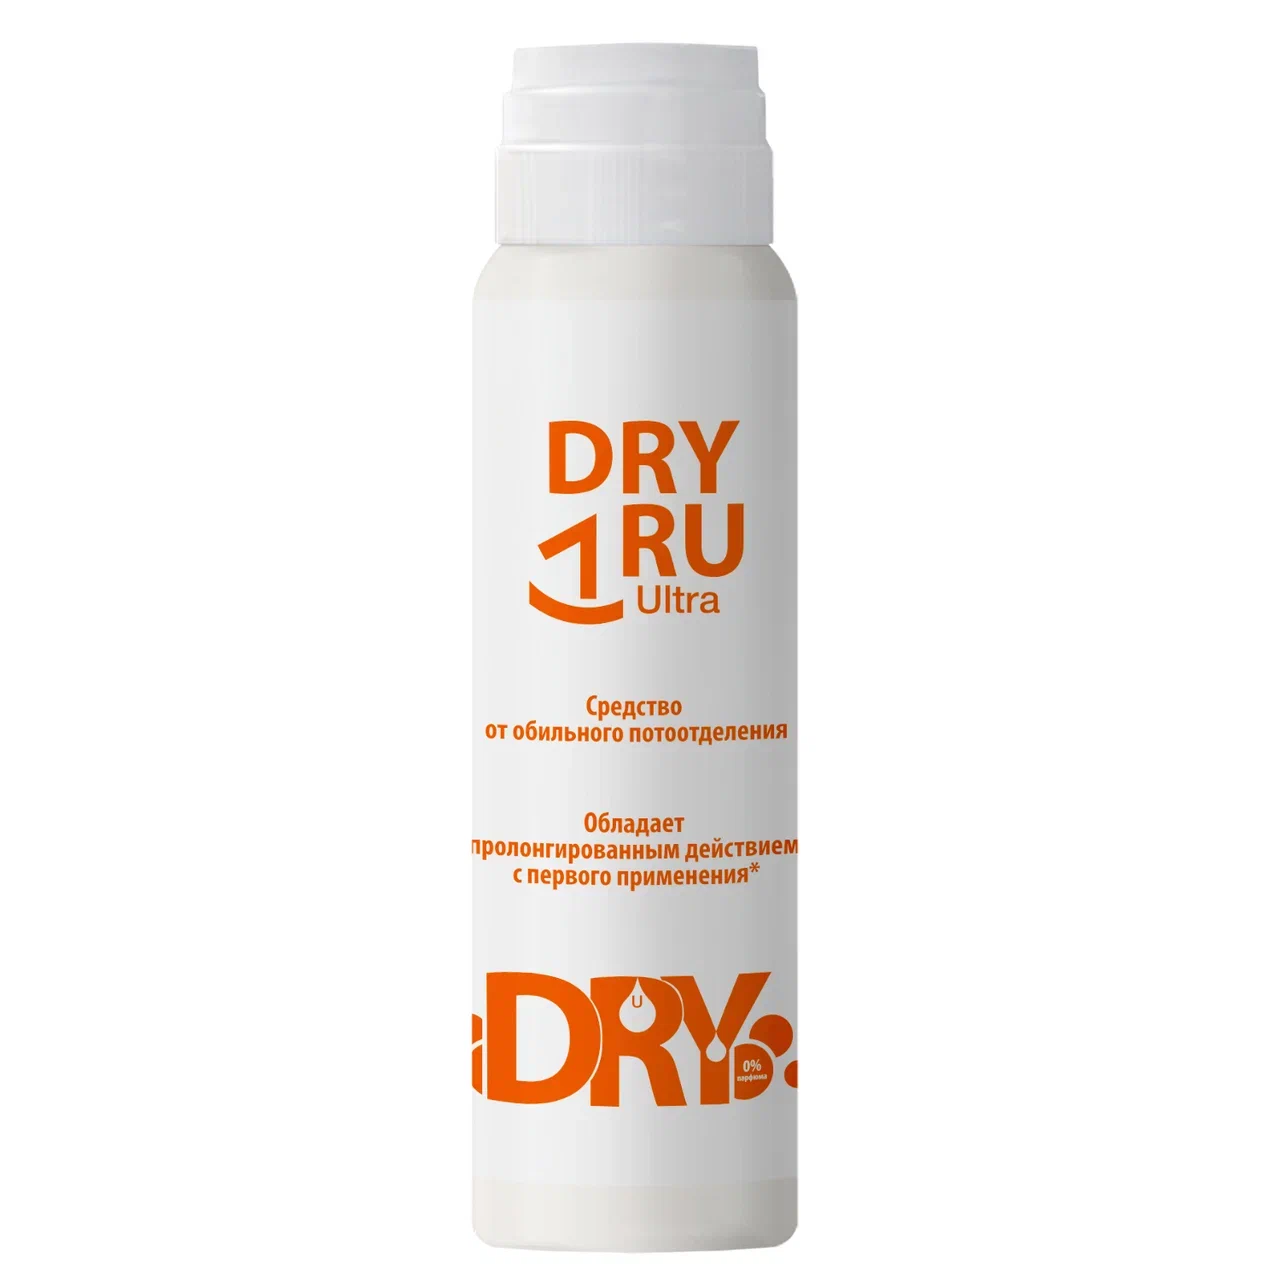 Дезодорант DRY RU Ультра от обильного потоотделения, с пролонгированным действием 50 мл средство от обильного потоотделения с пролонгированным действием ultra dry ru драй ру 50мл